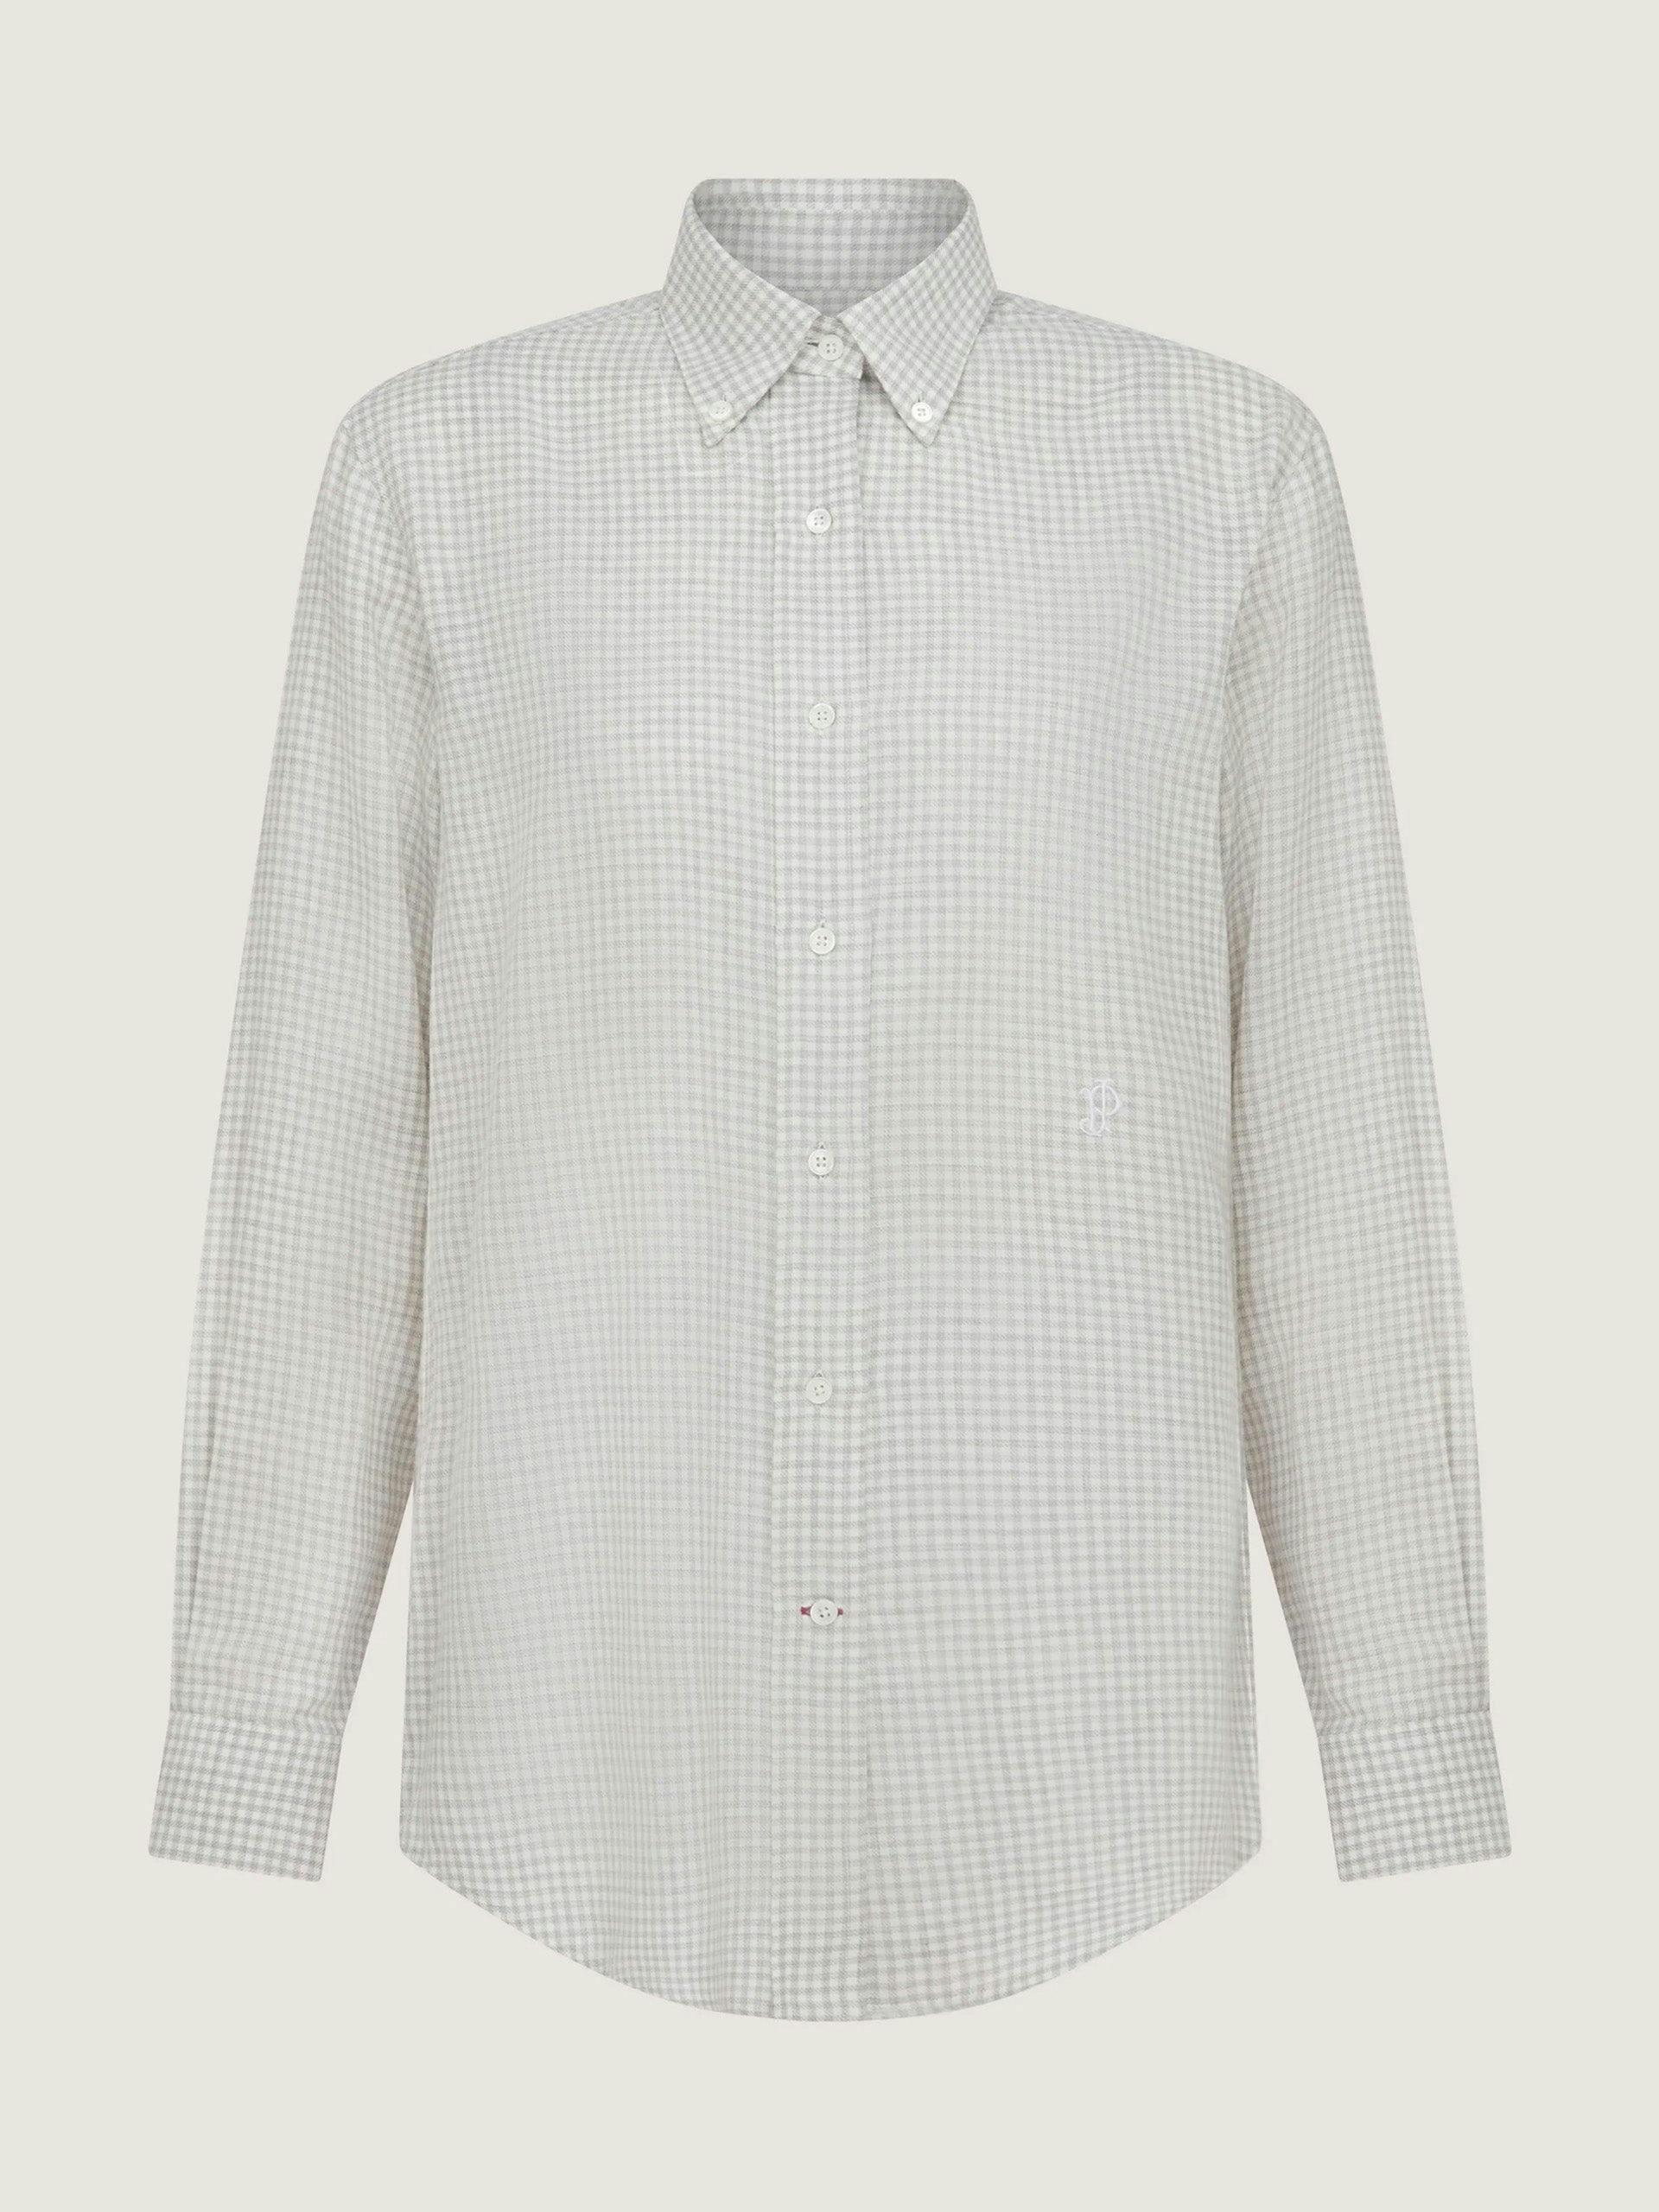 Cotton cashmere button down shirt